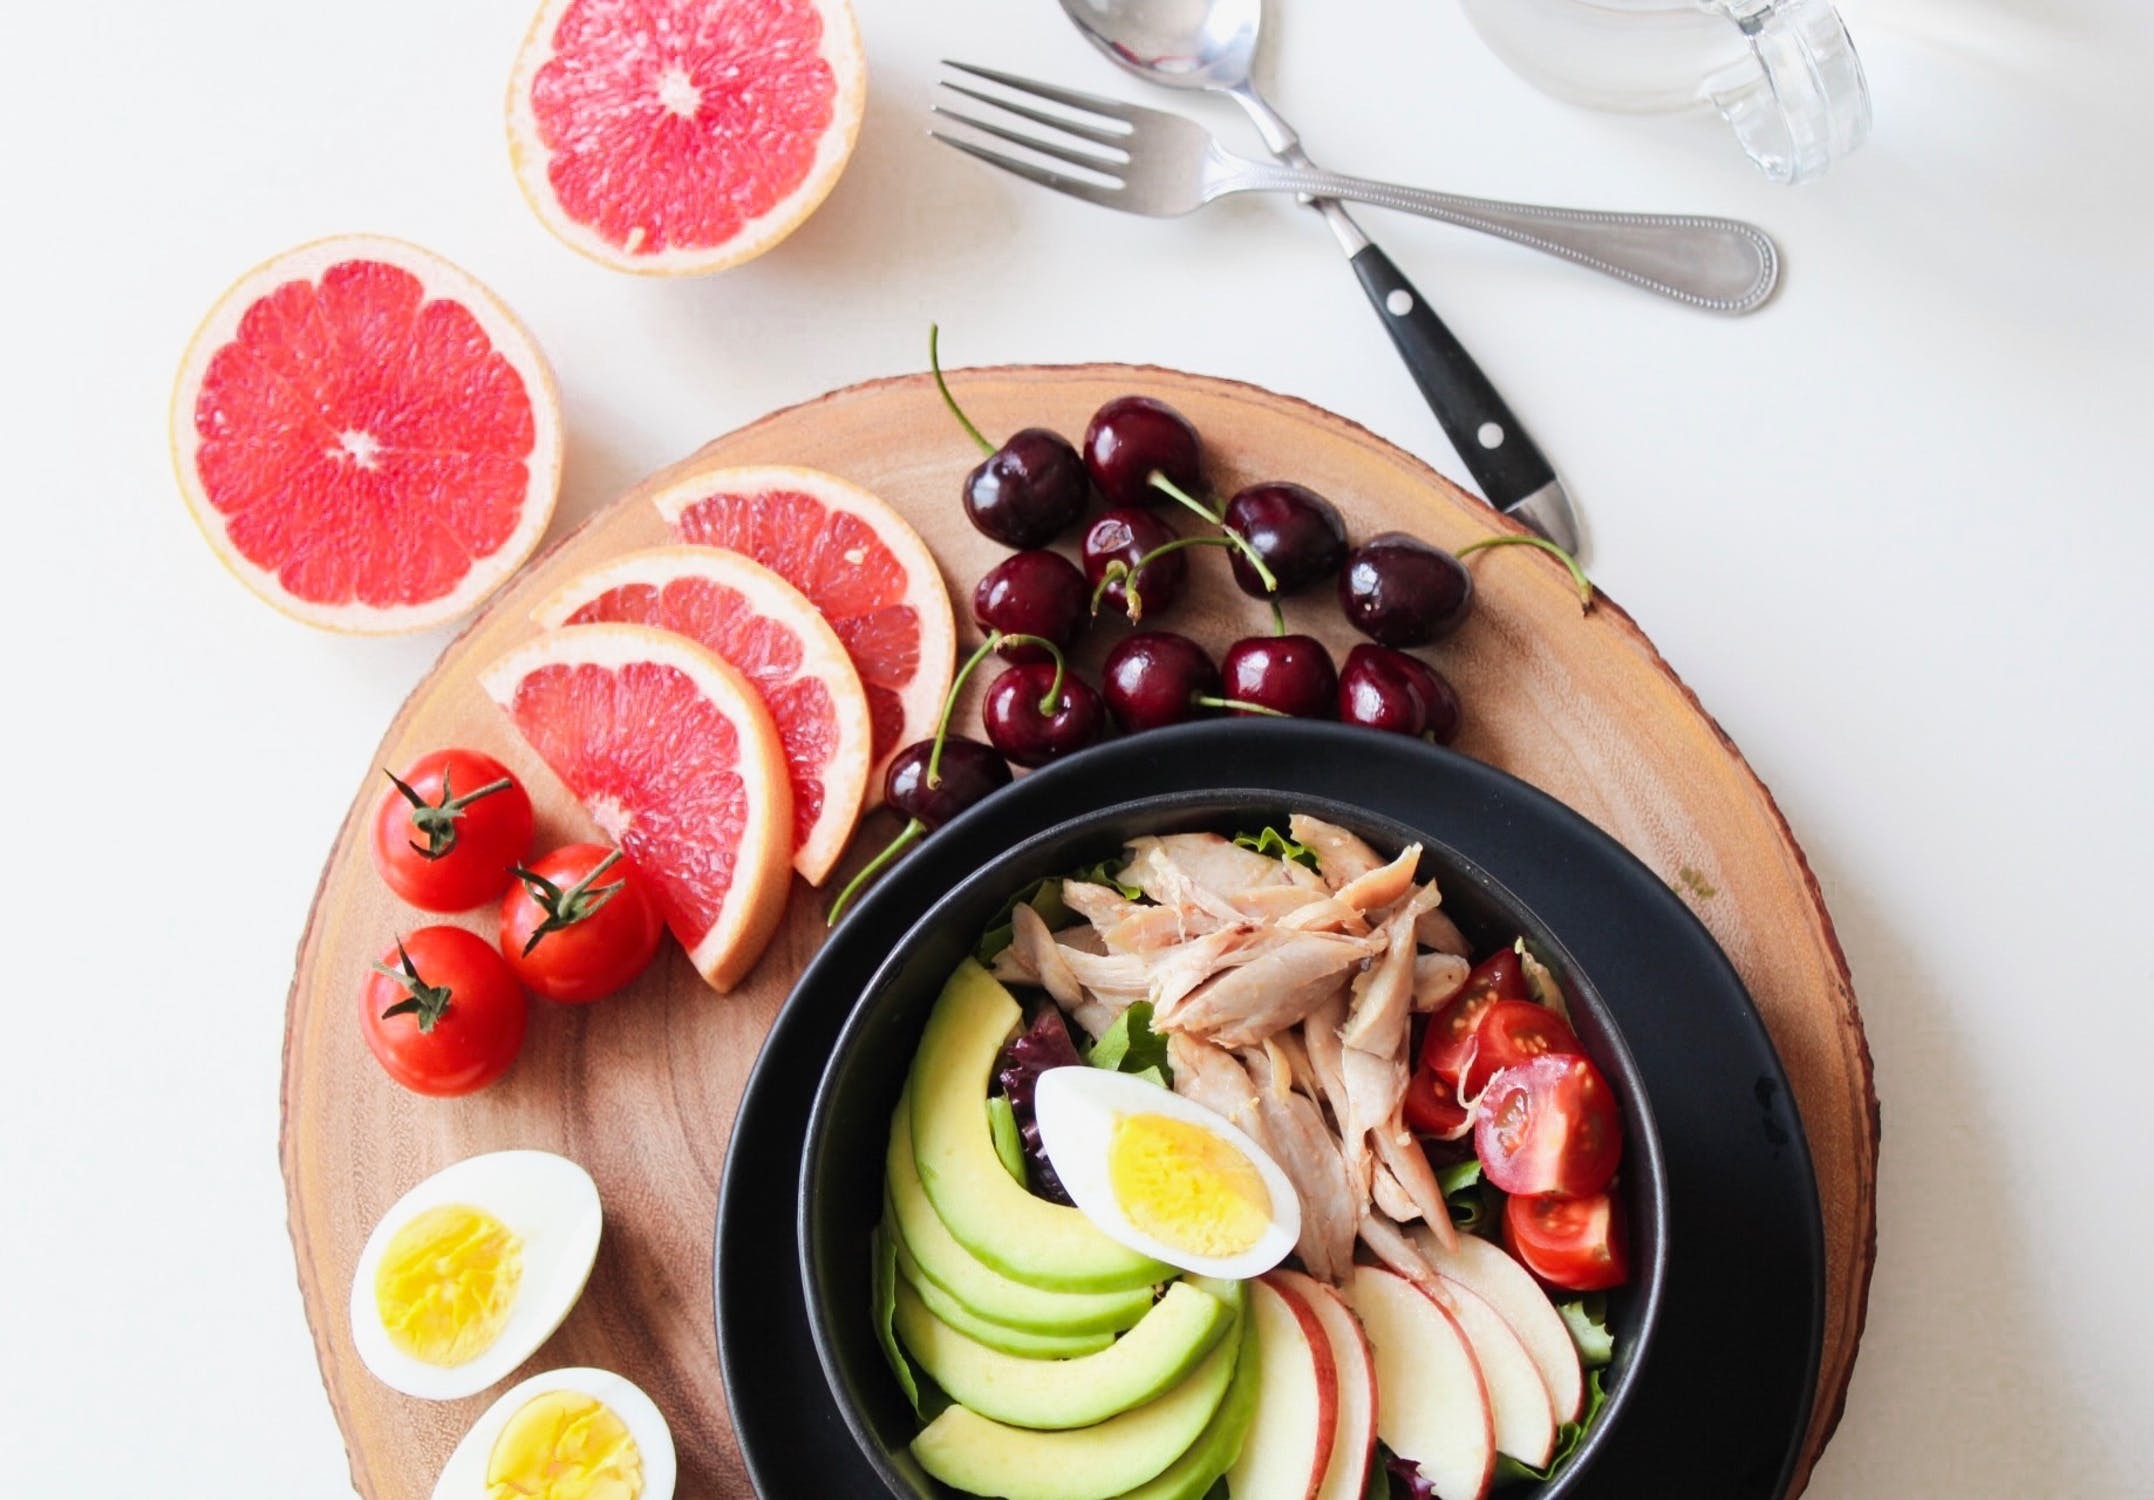 Frutas, legumes e verduras estão entre os alimentos liberados (Foto: Pexels)